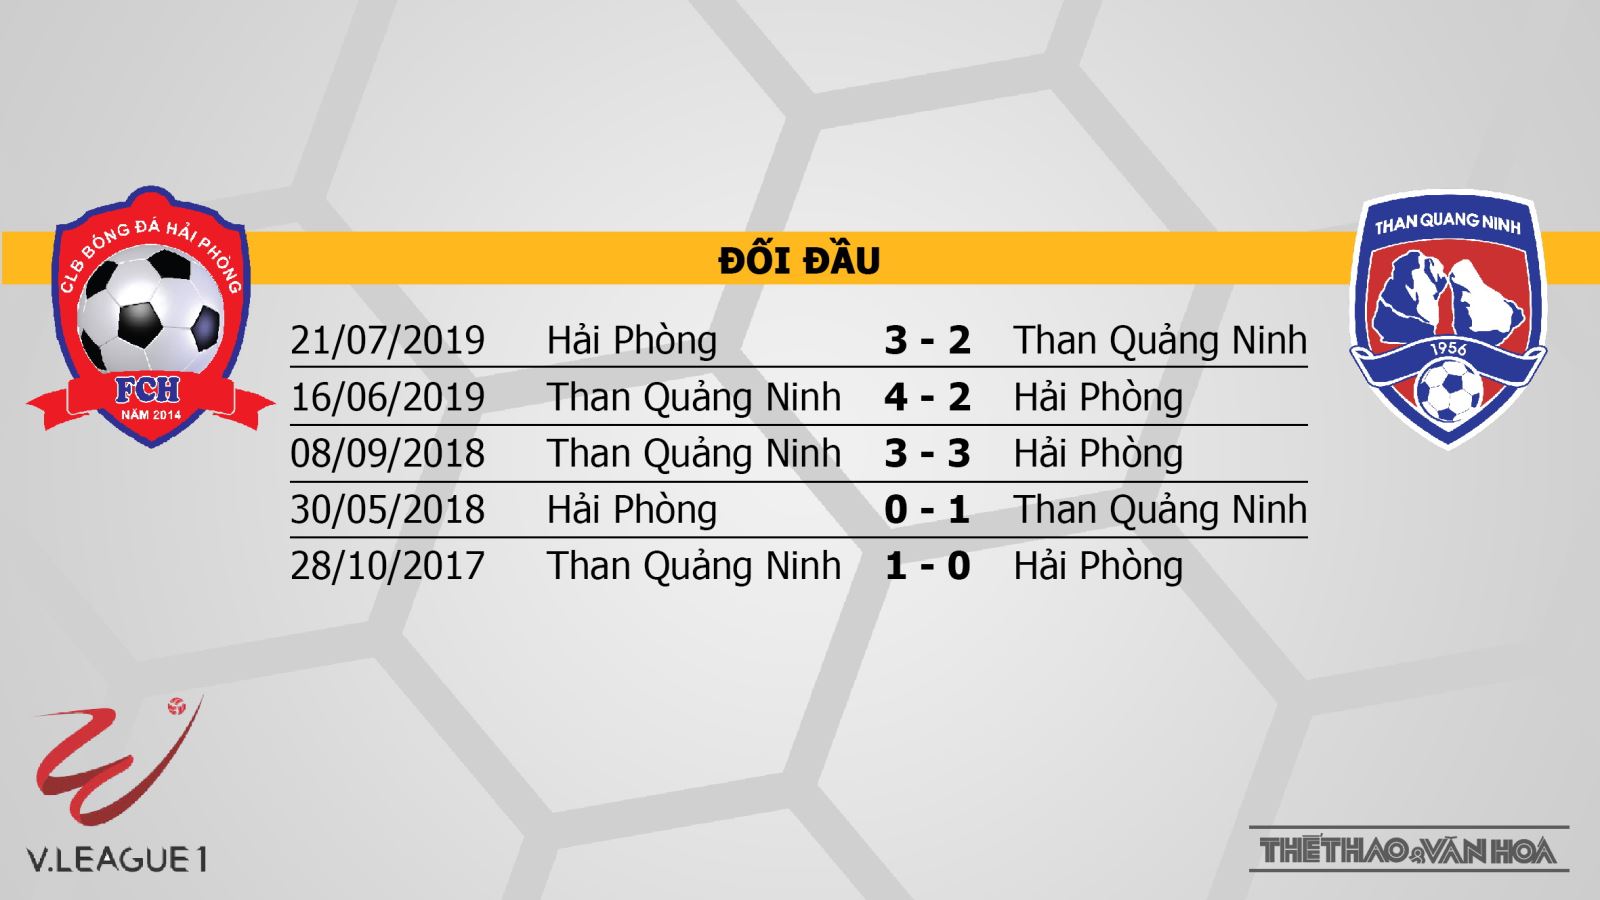 Hải Phòng đấu với Than Quảng Ninh, Hải Phòng, Than Quảng Ninh, nhận định bóng đá bóng đá, kèo bóng đá, bong da, bong da hom nay, nhận định, dự đoán